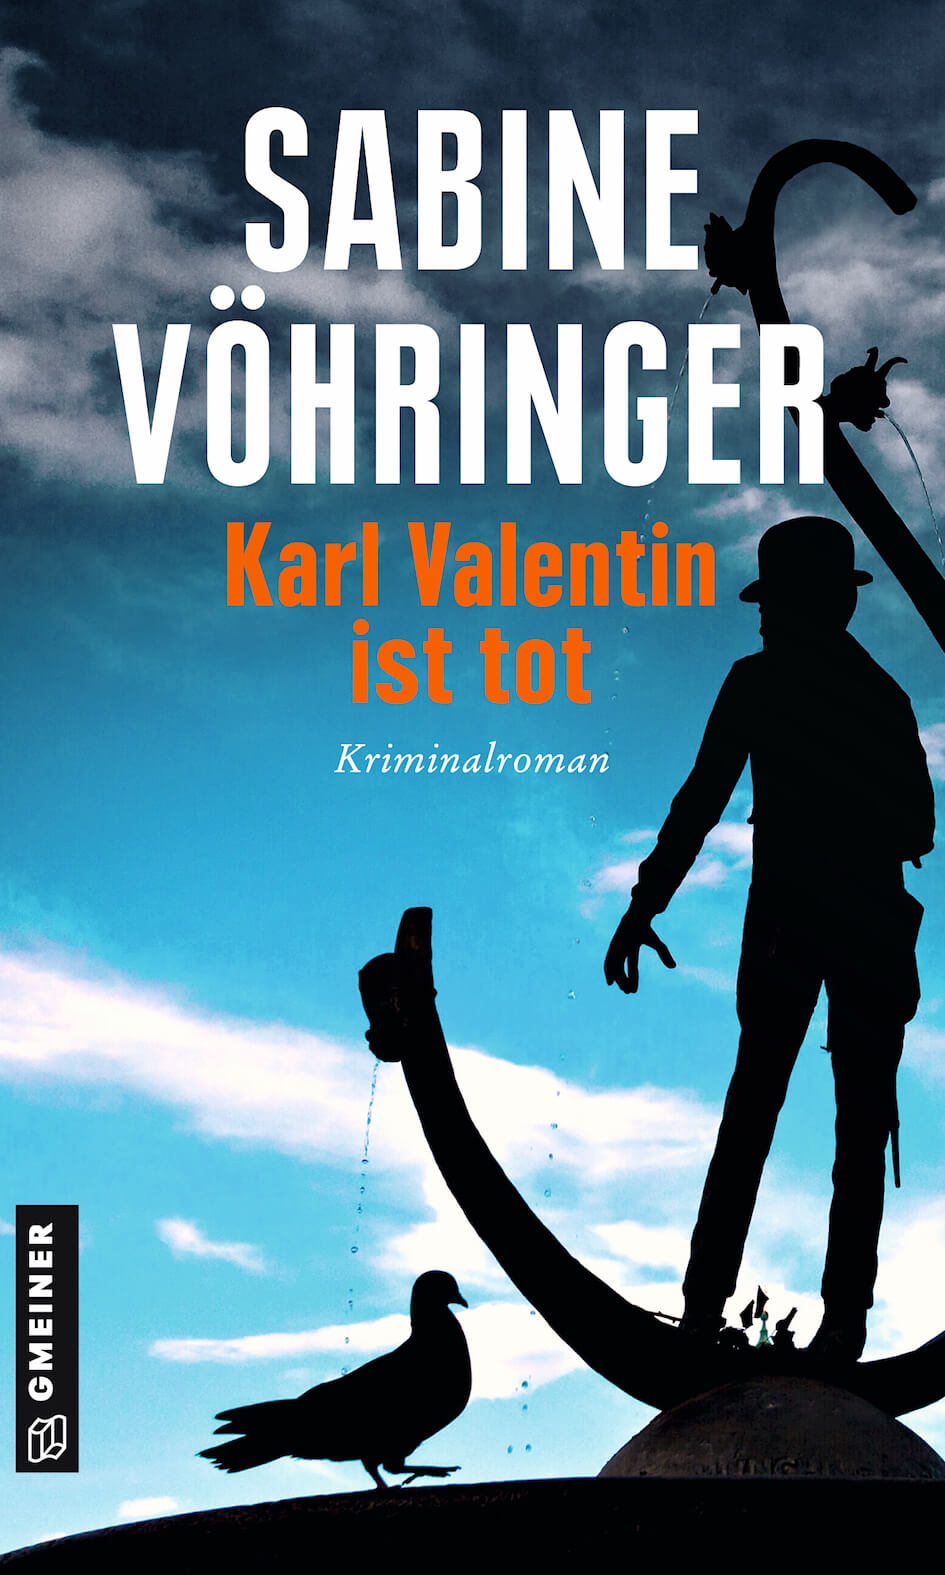 Karl Valentin ist tot Sabine Voehringer